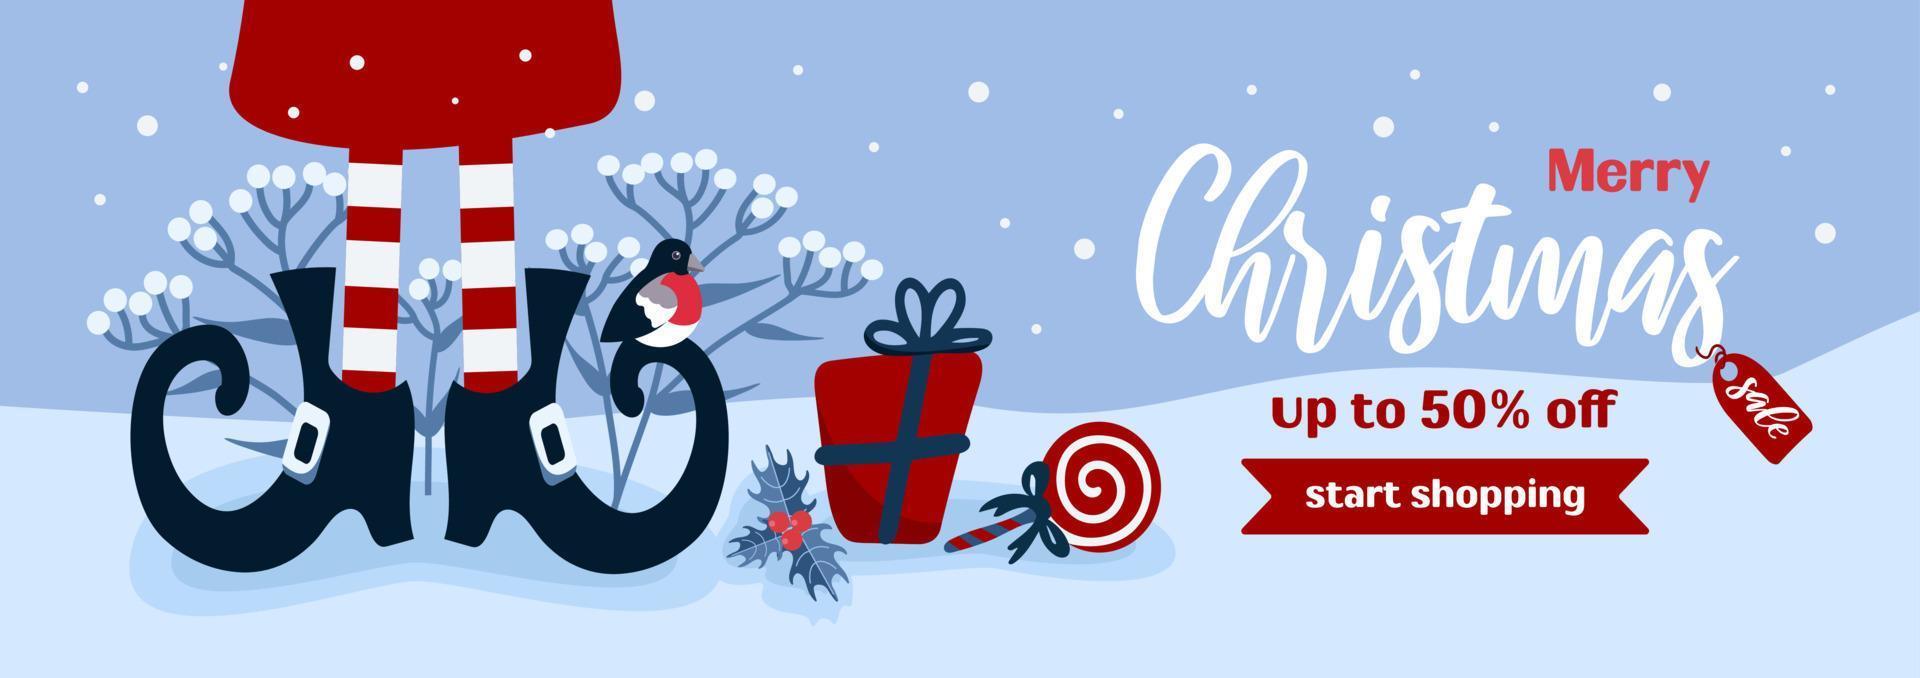 glad jul försäljning. ljus horisontell vektor baner i tecknad serie stil i blå och röd färger. klubba, gåvor, randig strumpor, älva skor, järnek. för reklam baner, affisch, flygblad